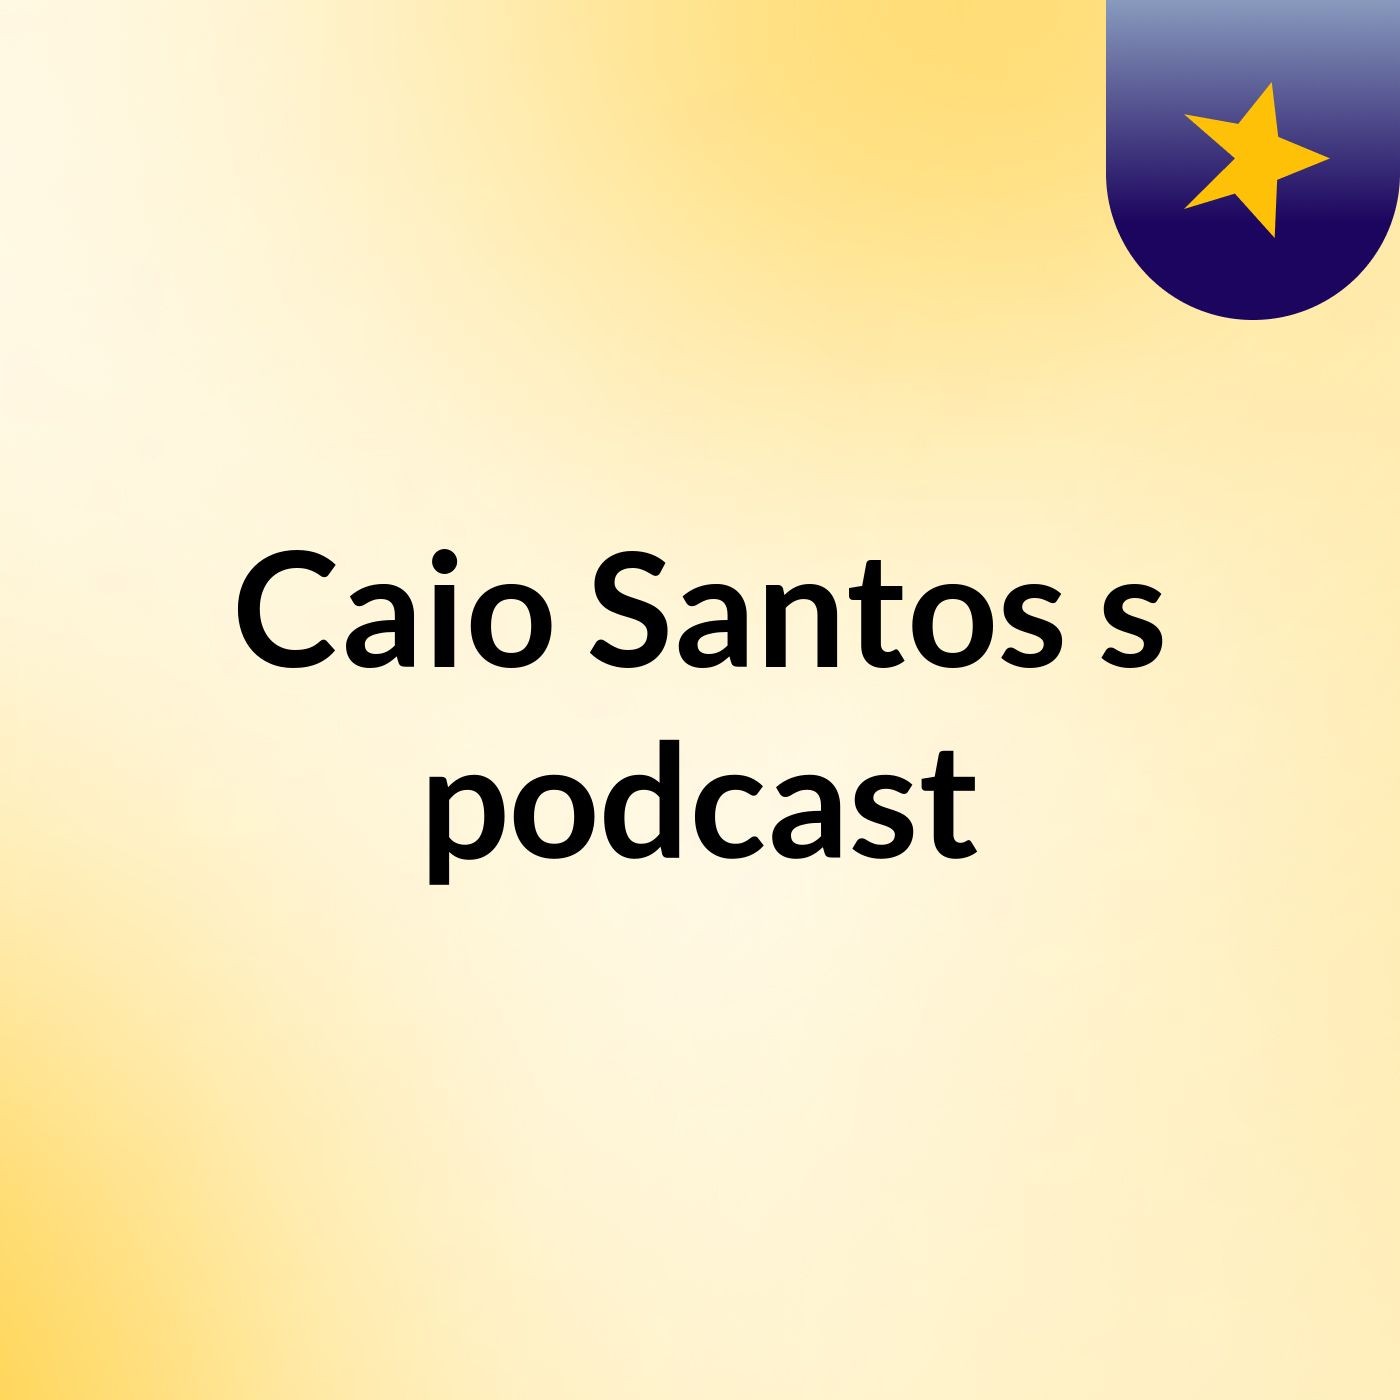 Caio Santos's podcast